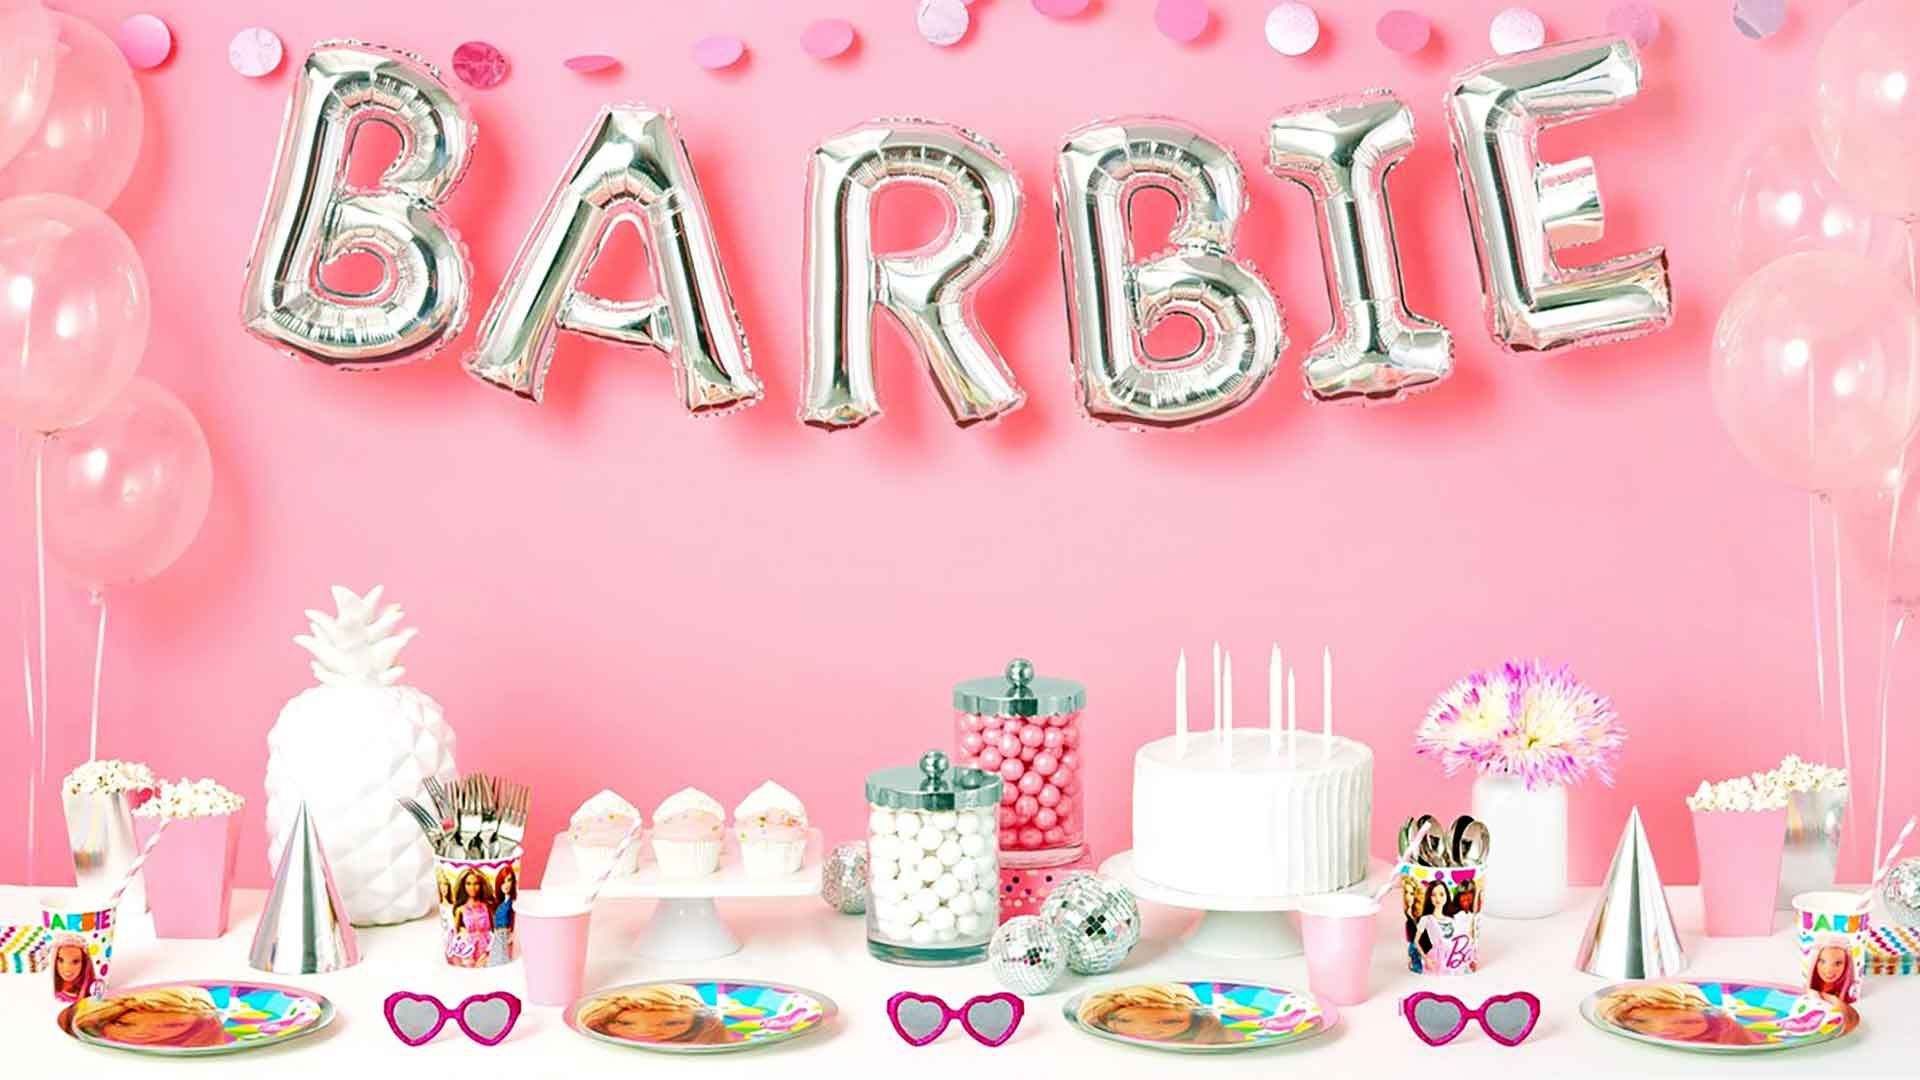 Onze nieuwe Barbiekleertjes webshop is online